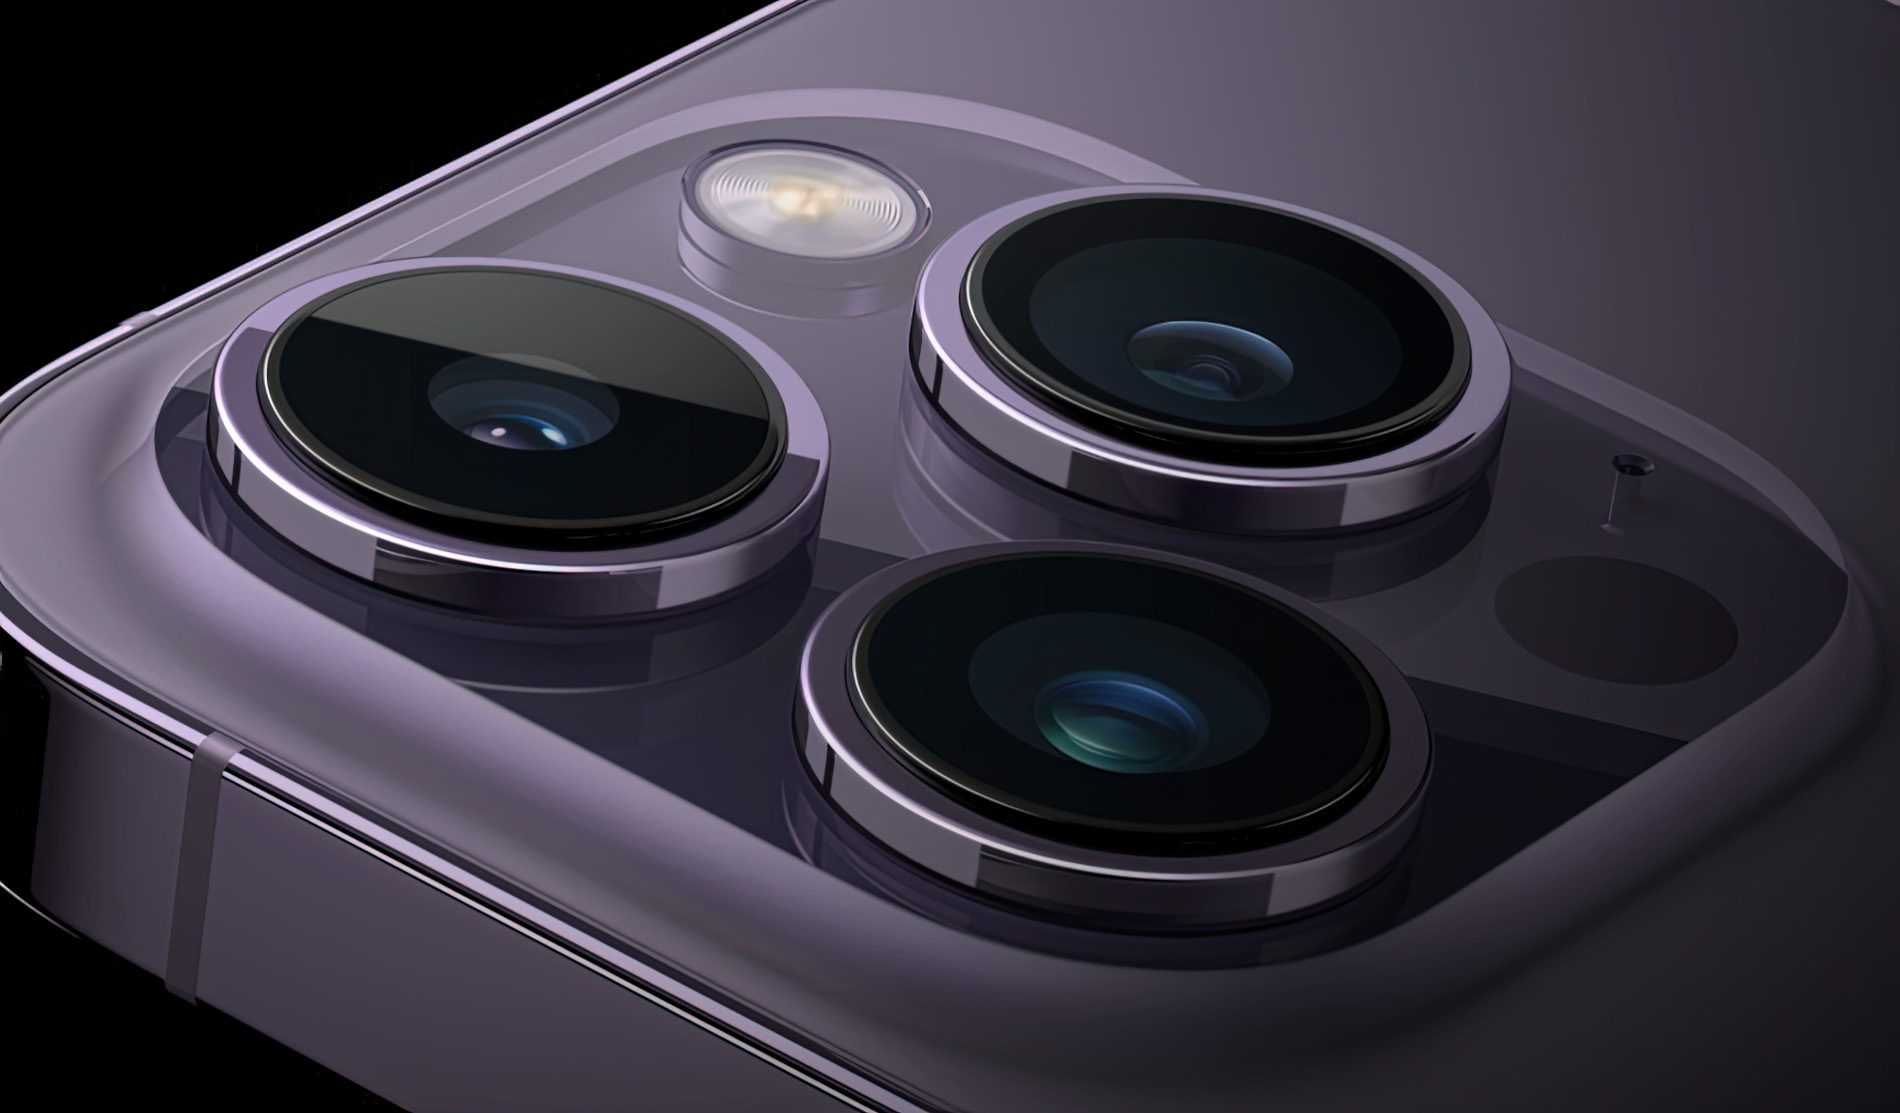 Die Photonic Engine setzt die Hardware des iPhone 14 voraus, da diese sowohl den A16 Chip, als auch die neuen Kamera-Systeme beinhaltet.